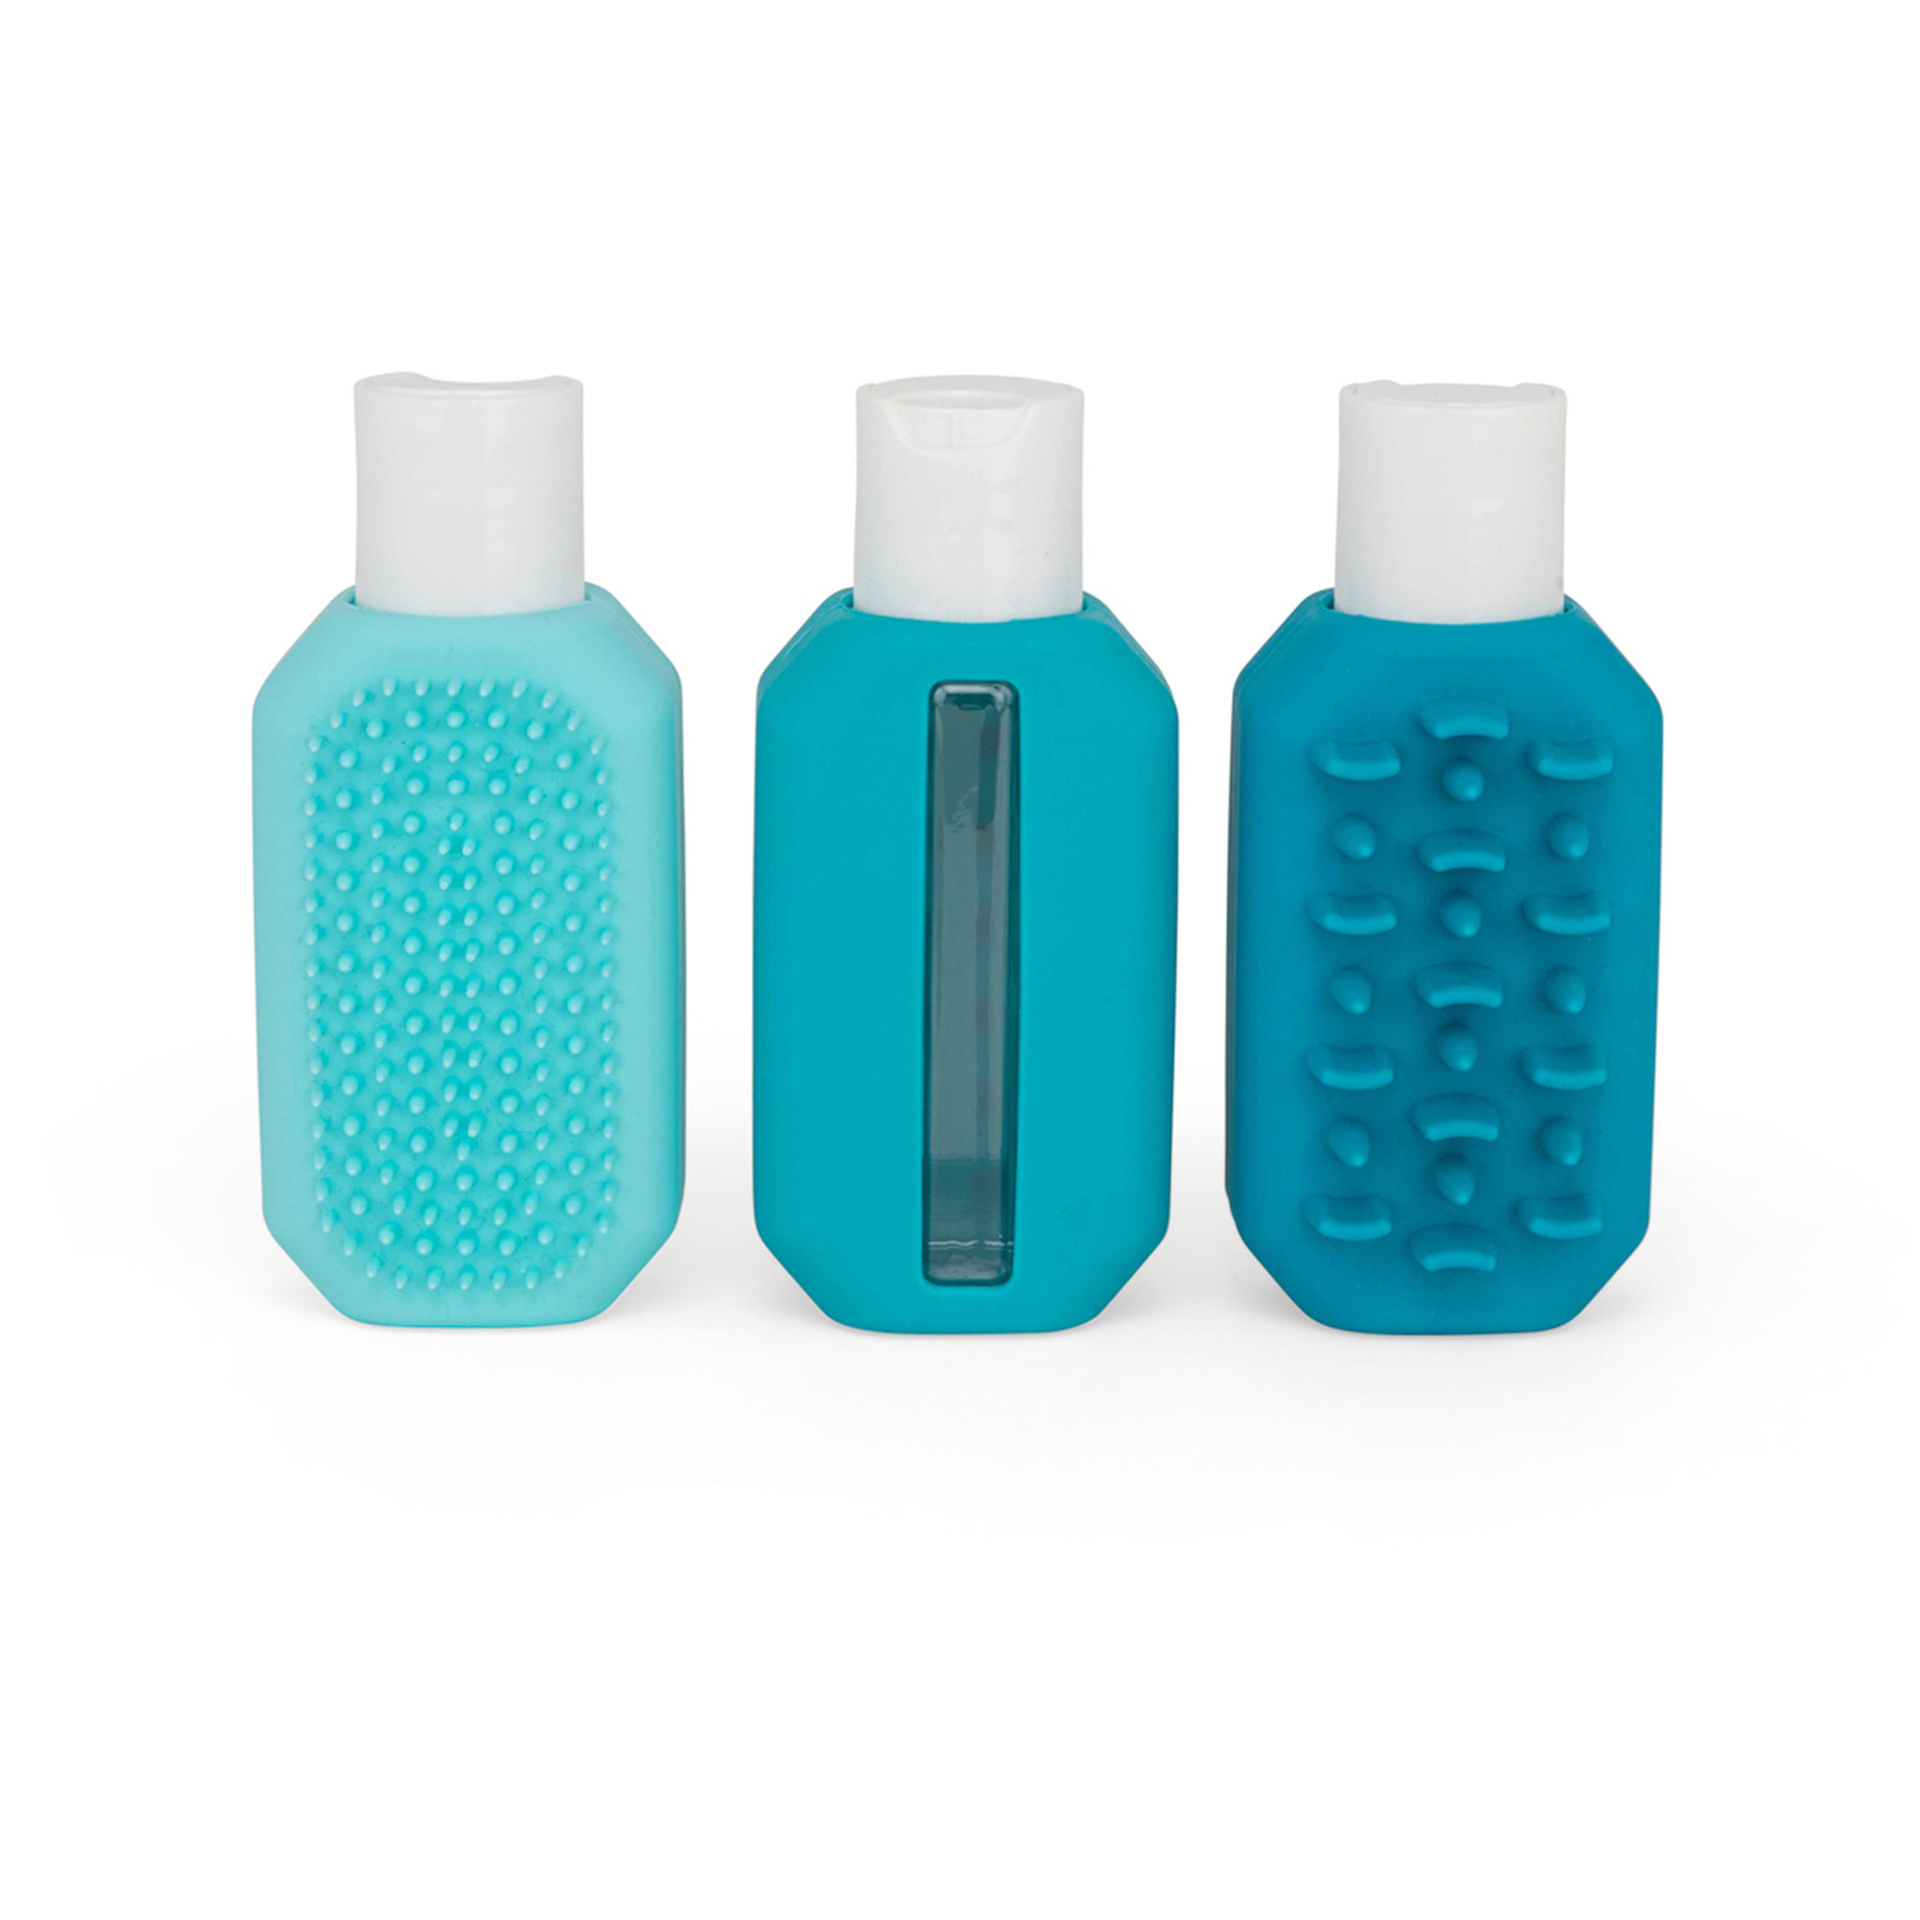 Bottigliette da viaggio con spazzole integrate - Set da 3 pz, , large